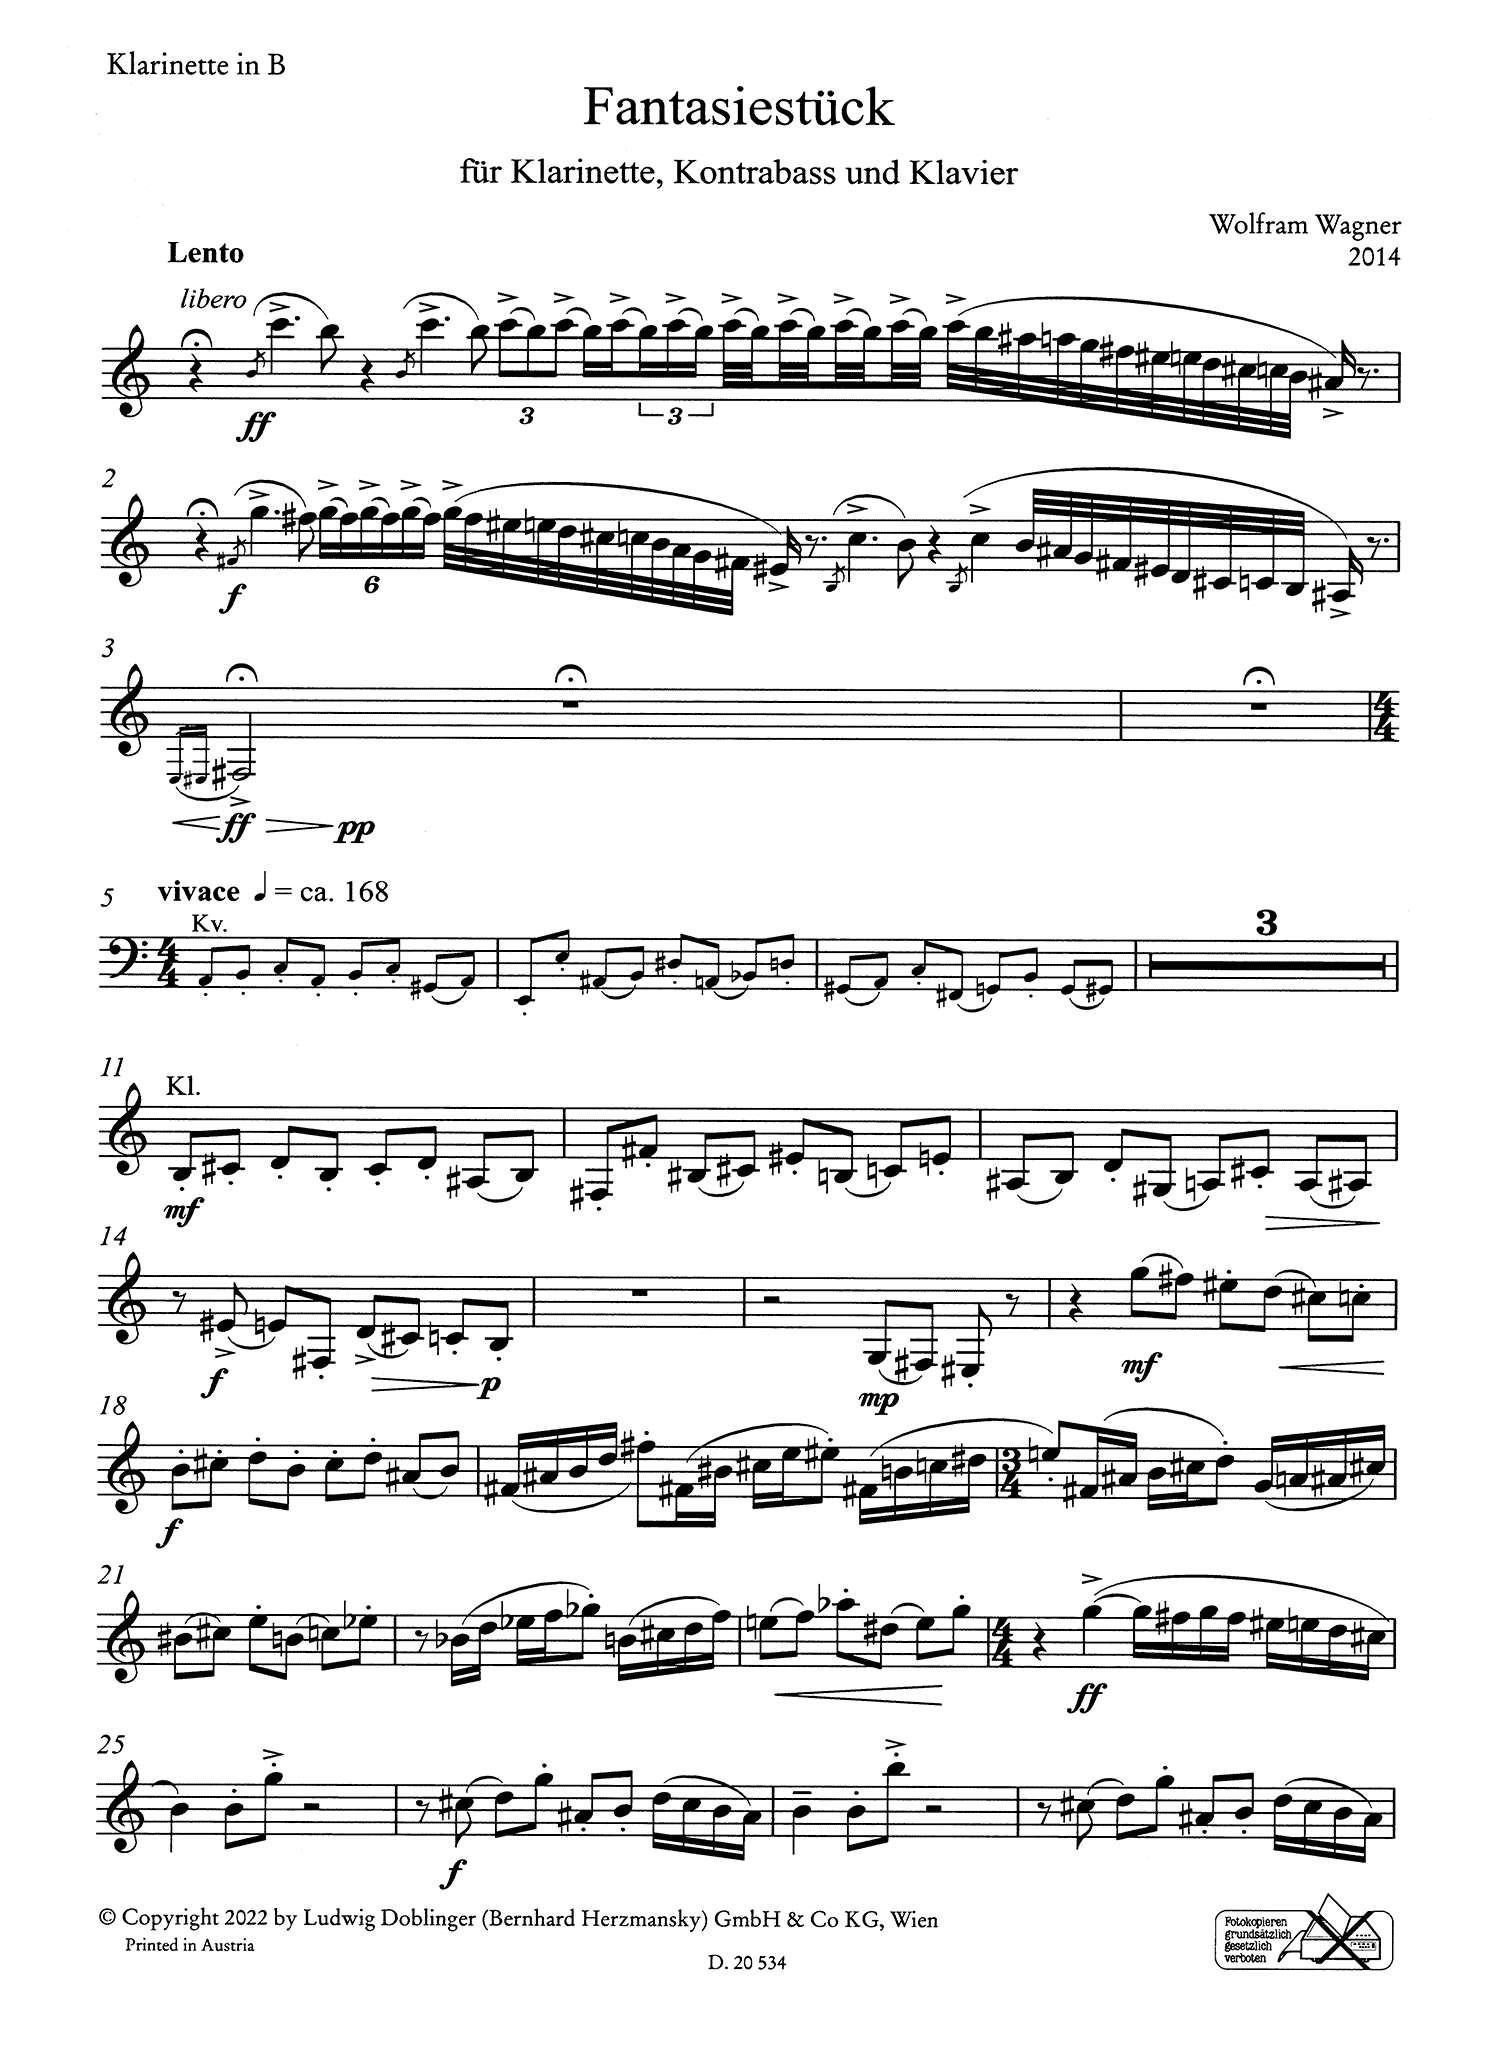 Wolfram Wagner Fantasiestück clarinet part